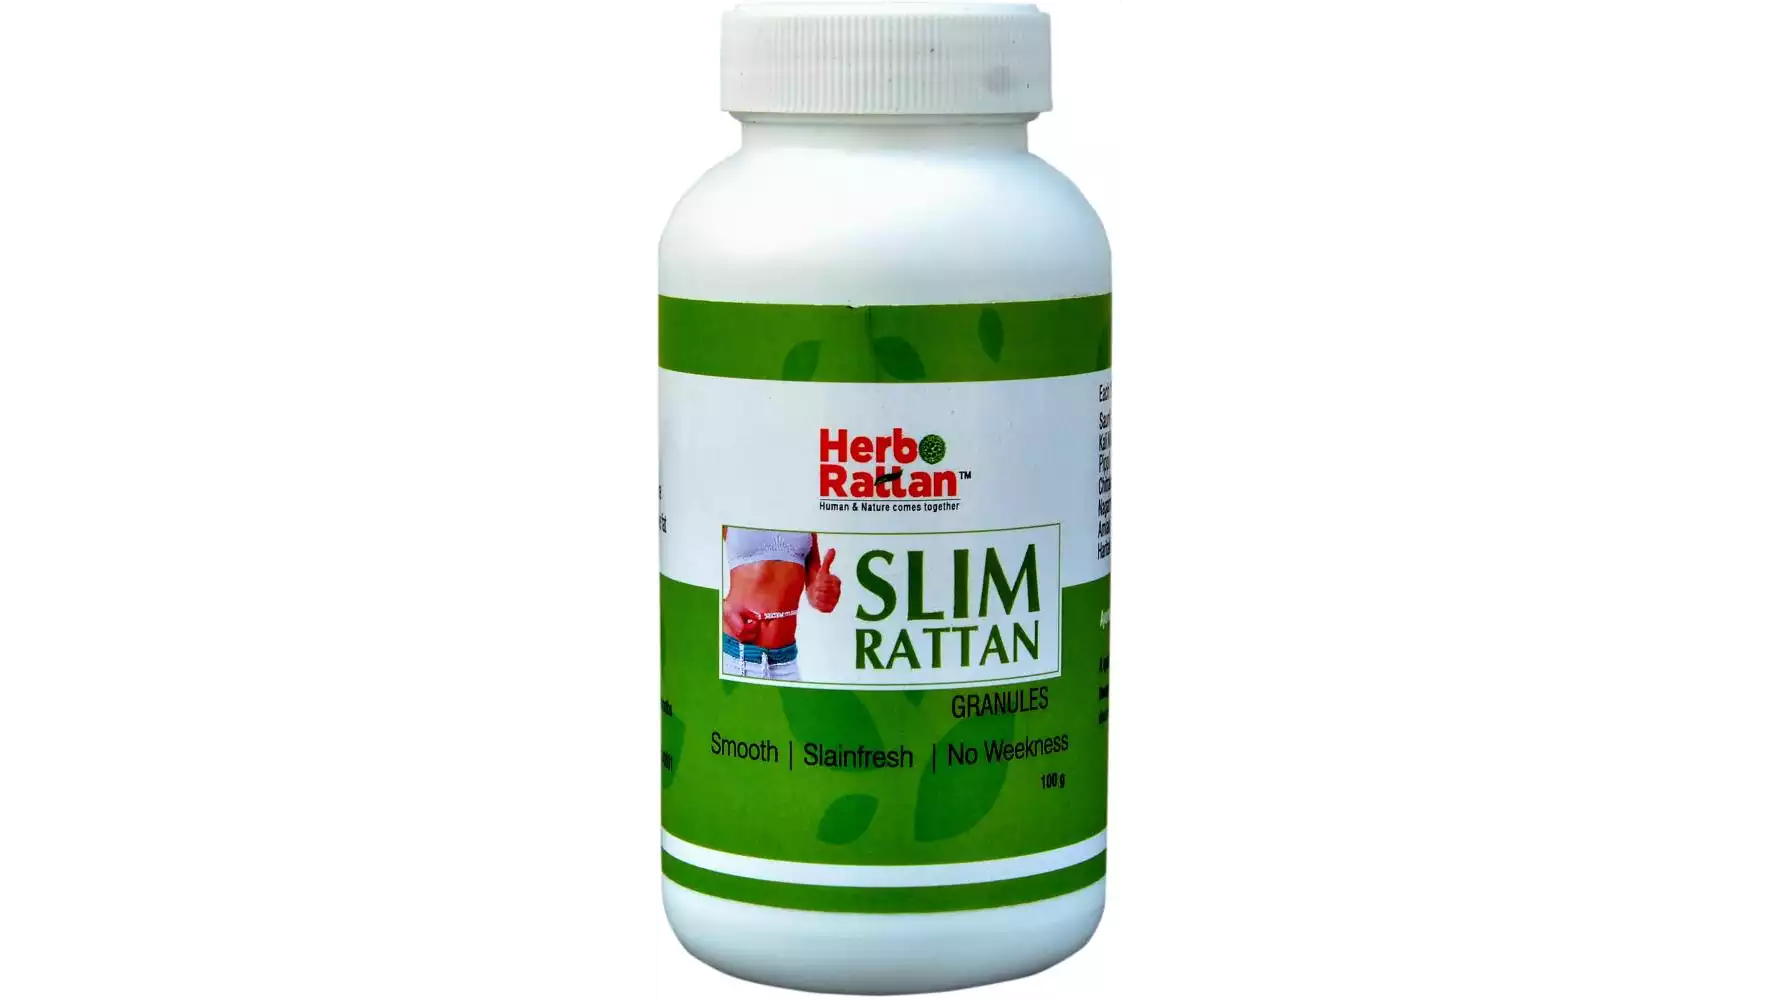 Rajni Herbals Slim Rattan Granuals (100g, Pack of 2)